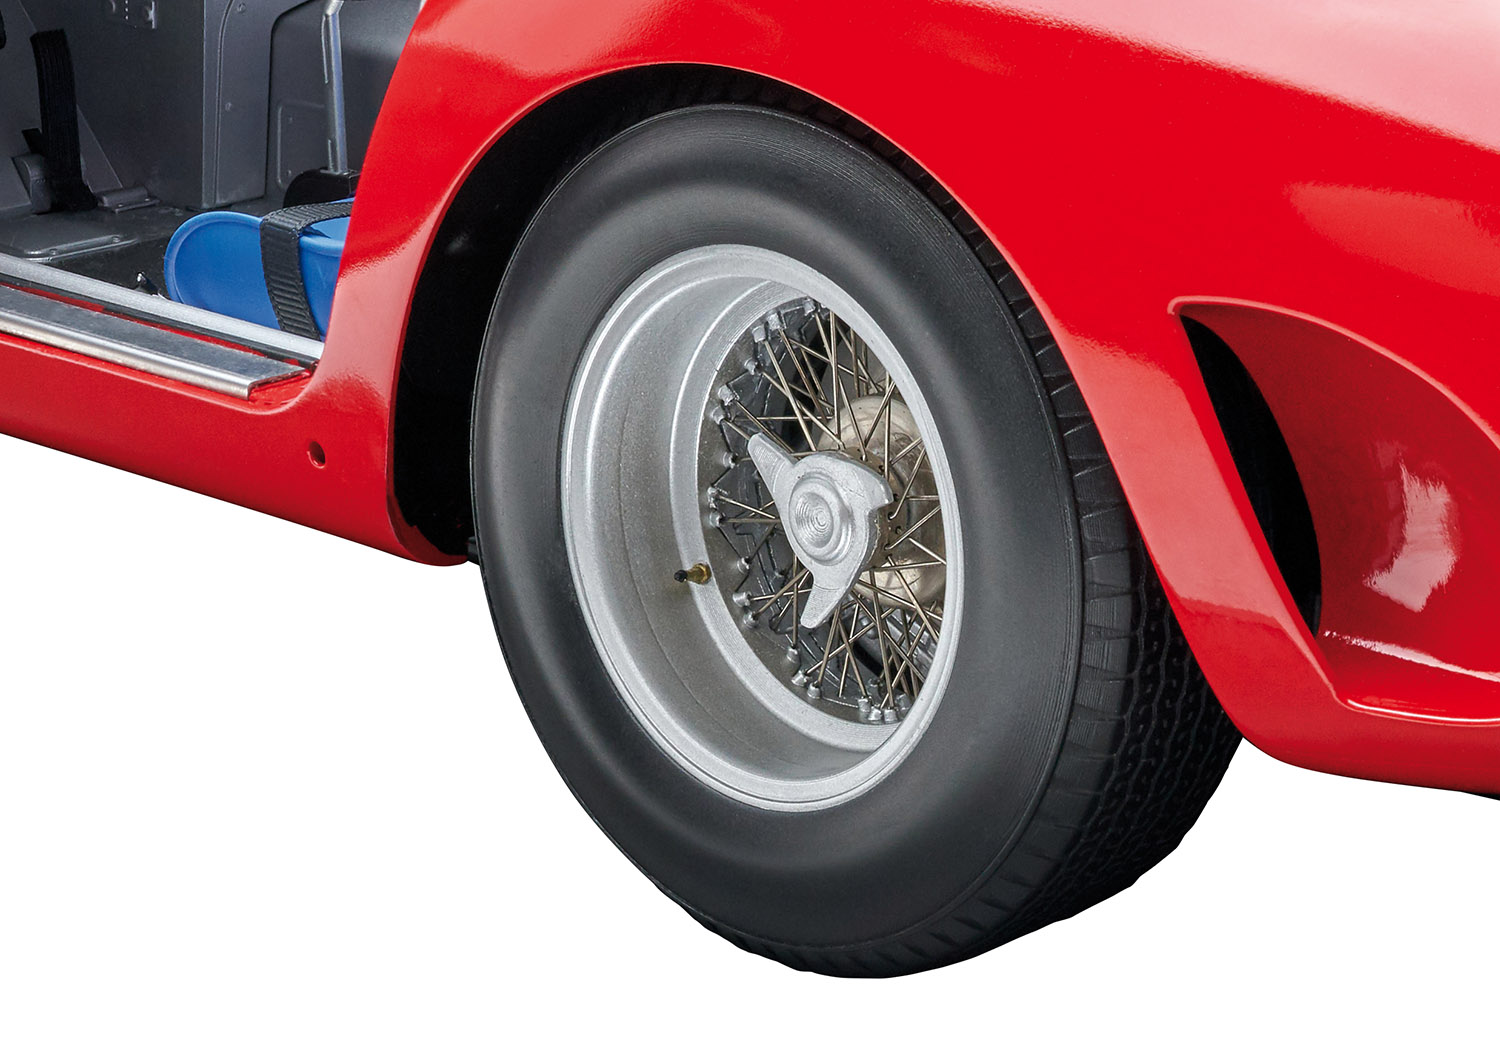 デアゴスティーニ･ジャパンから1/8スケールで組み立てる『フェラーリ 250 GTOをつくる』を発売